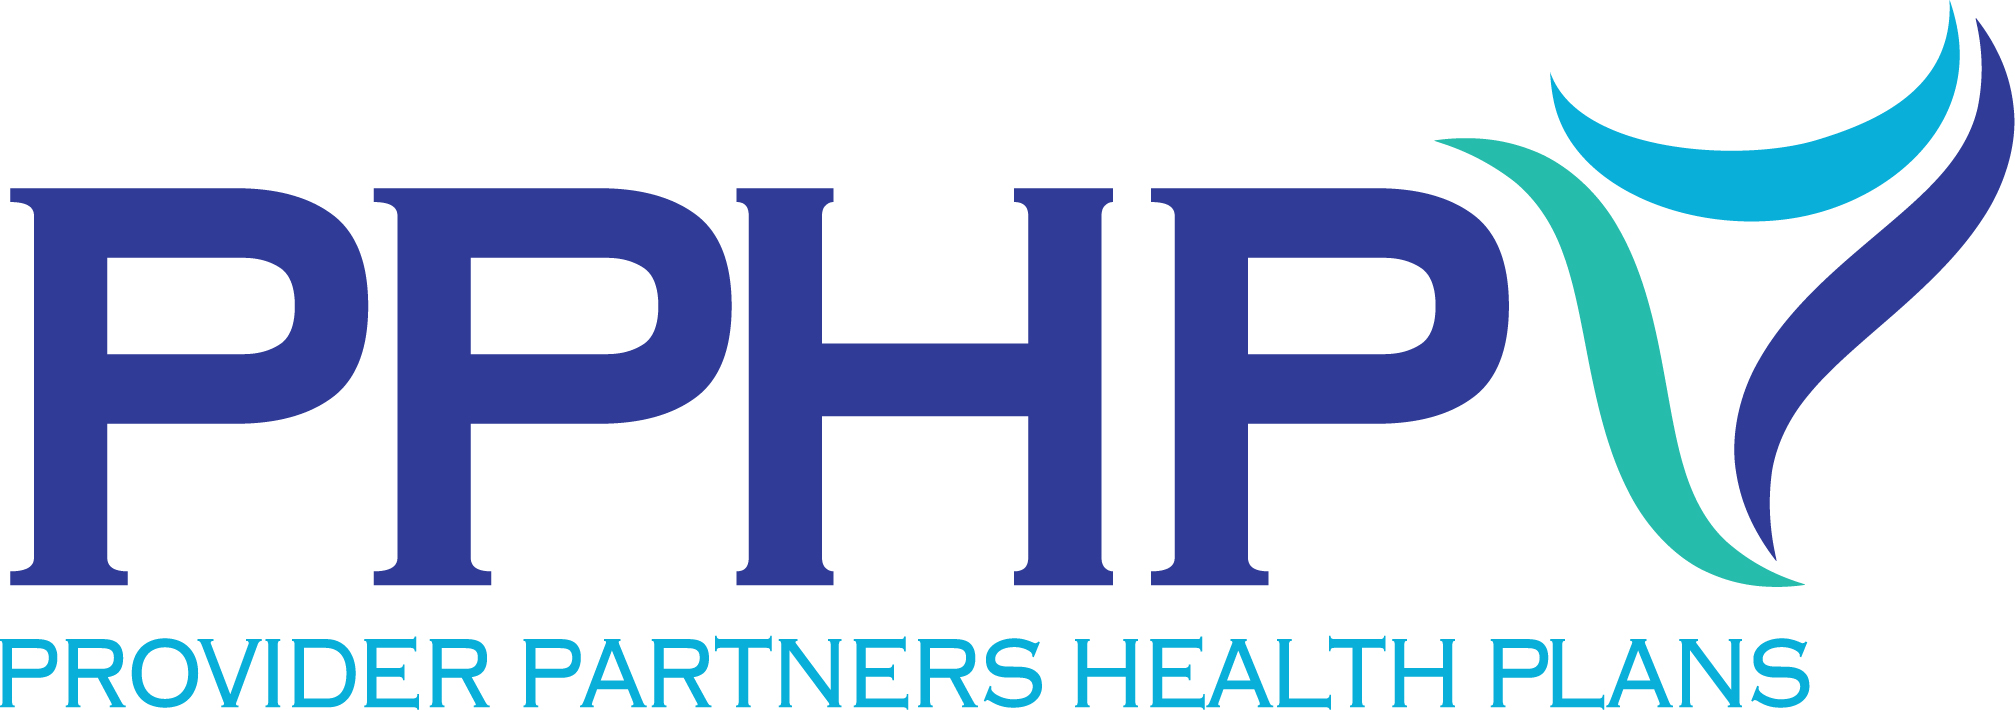 PPHPs_internal-logo-4c.jpg